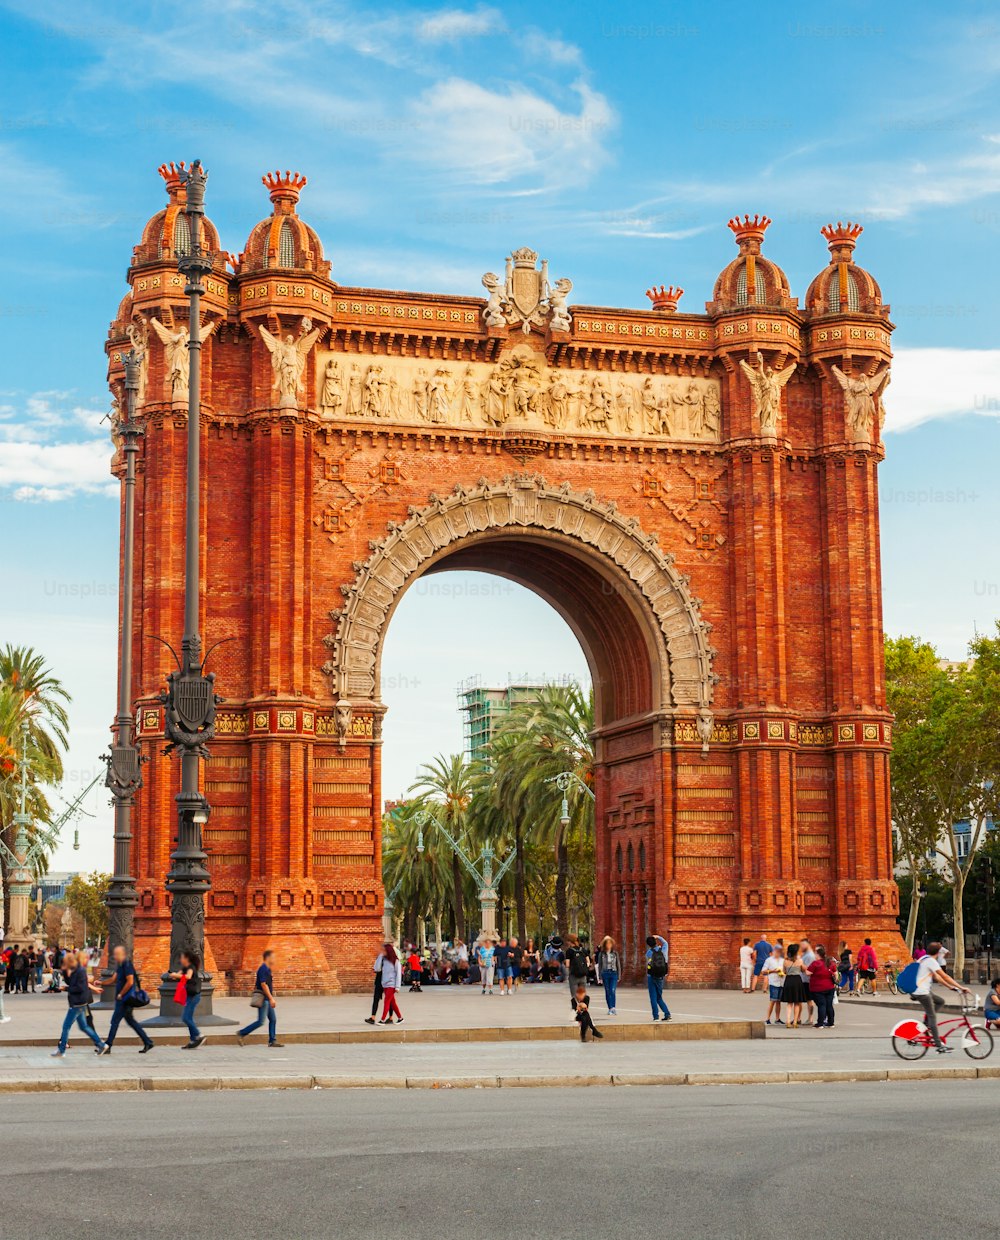 凱旋門または凱旋門は、スペインのカタルーニャ地方のバルセロナ市にある凱旋門です